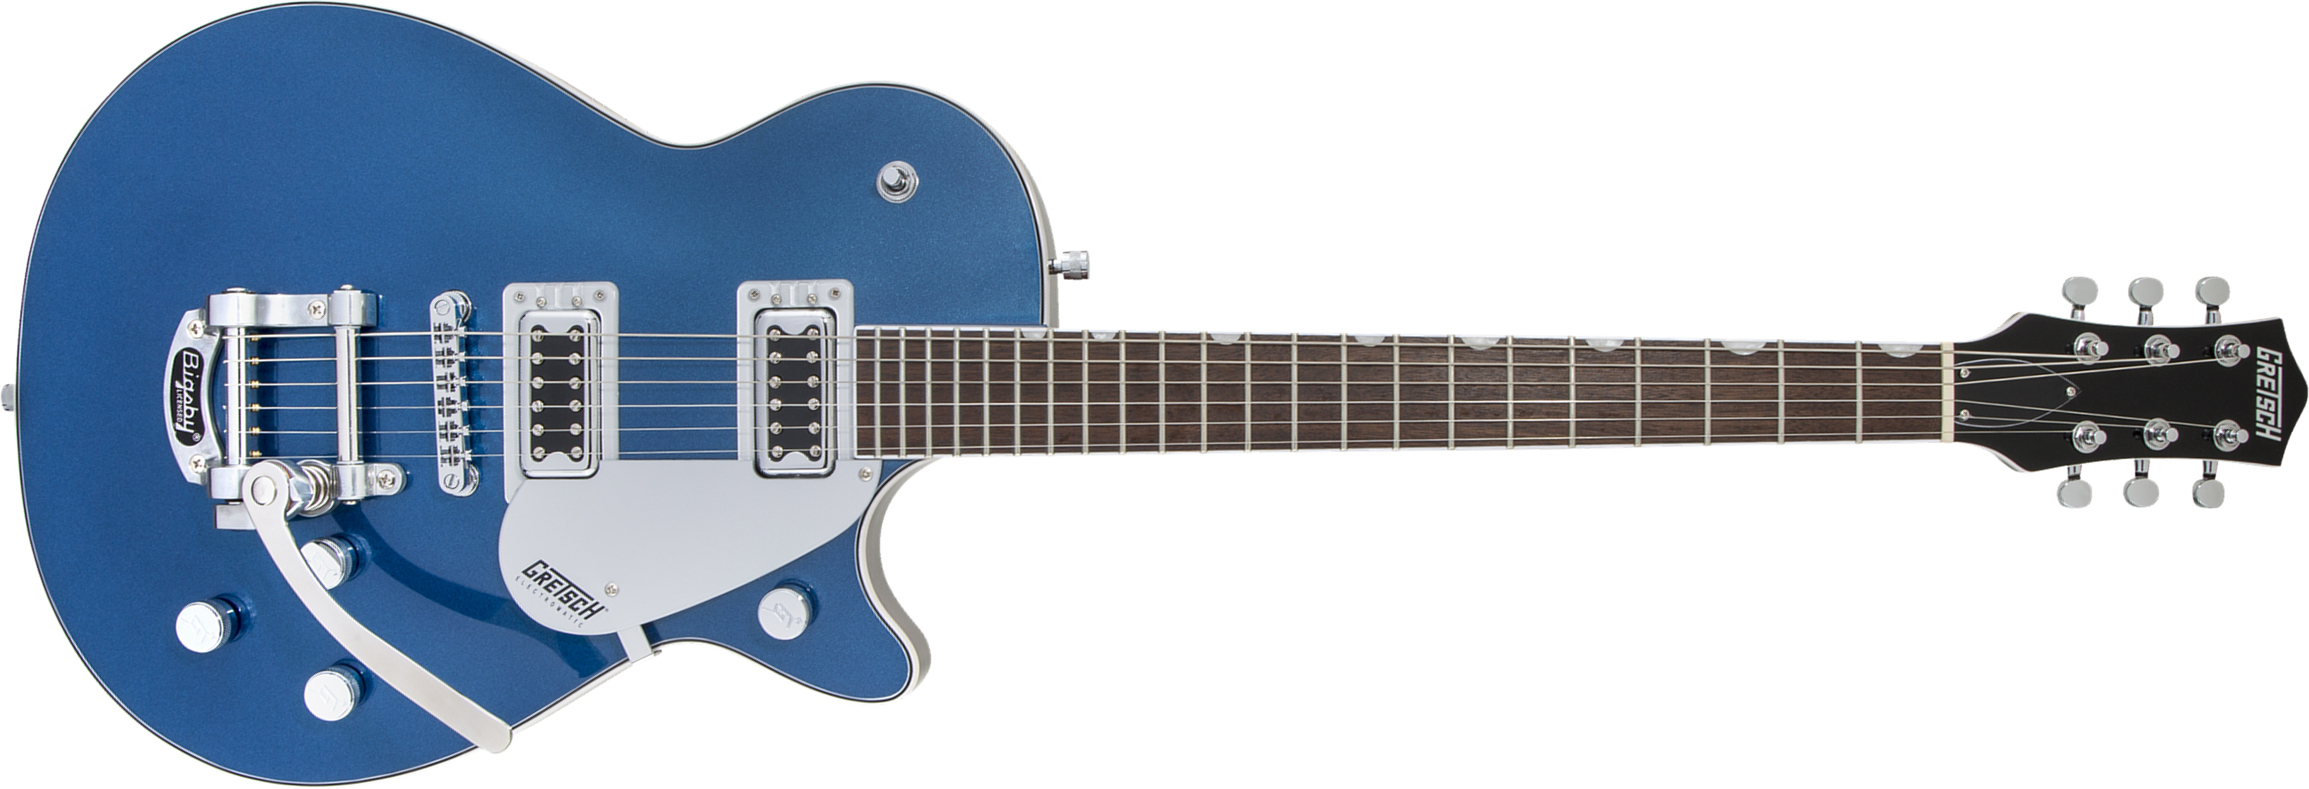 Gretsch G5230t Electromatic Jet Ft Single-cut Bigsby Hh Trem Wal - Aleutian Blue - Enkel gesneden elektrische gitaar - Main picture